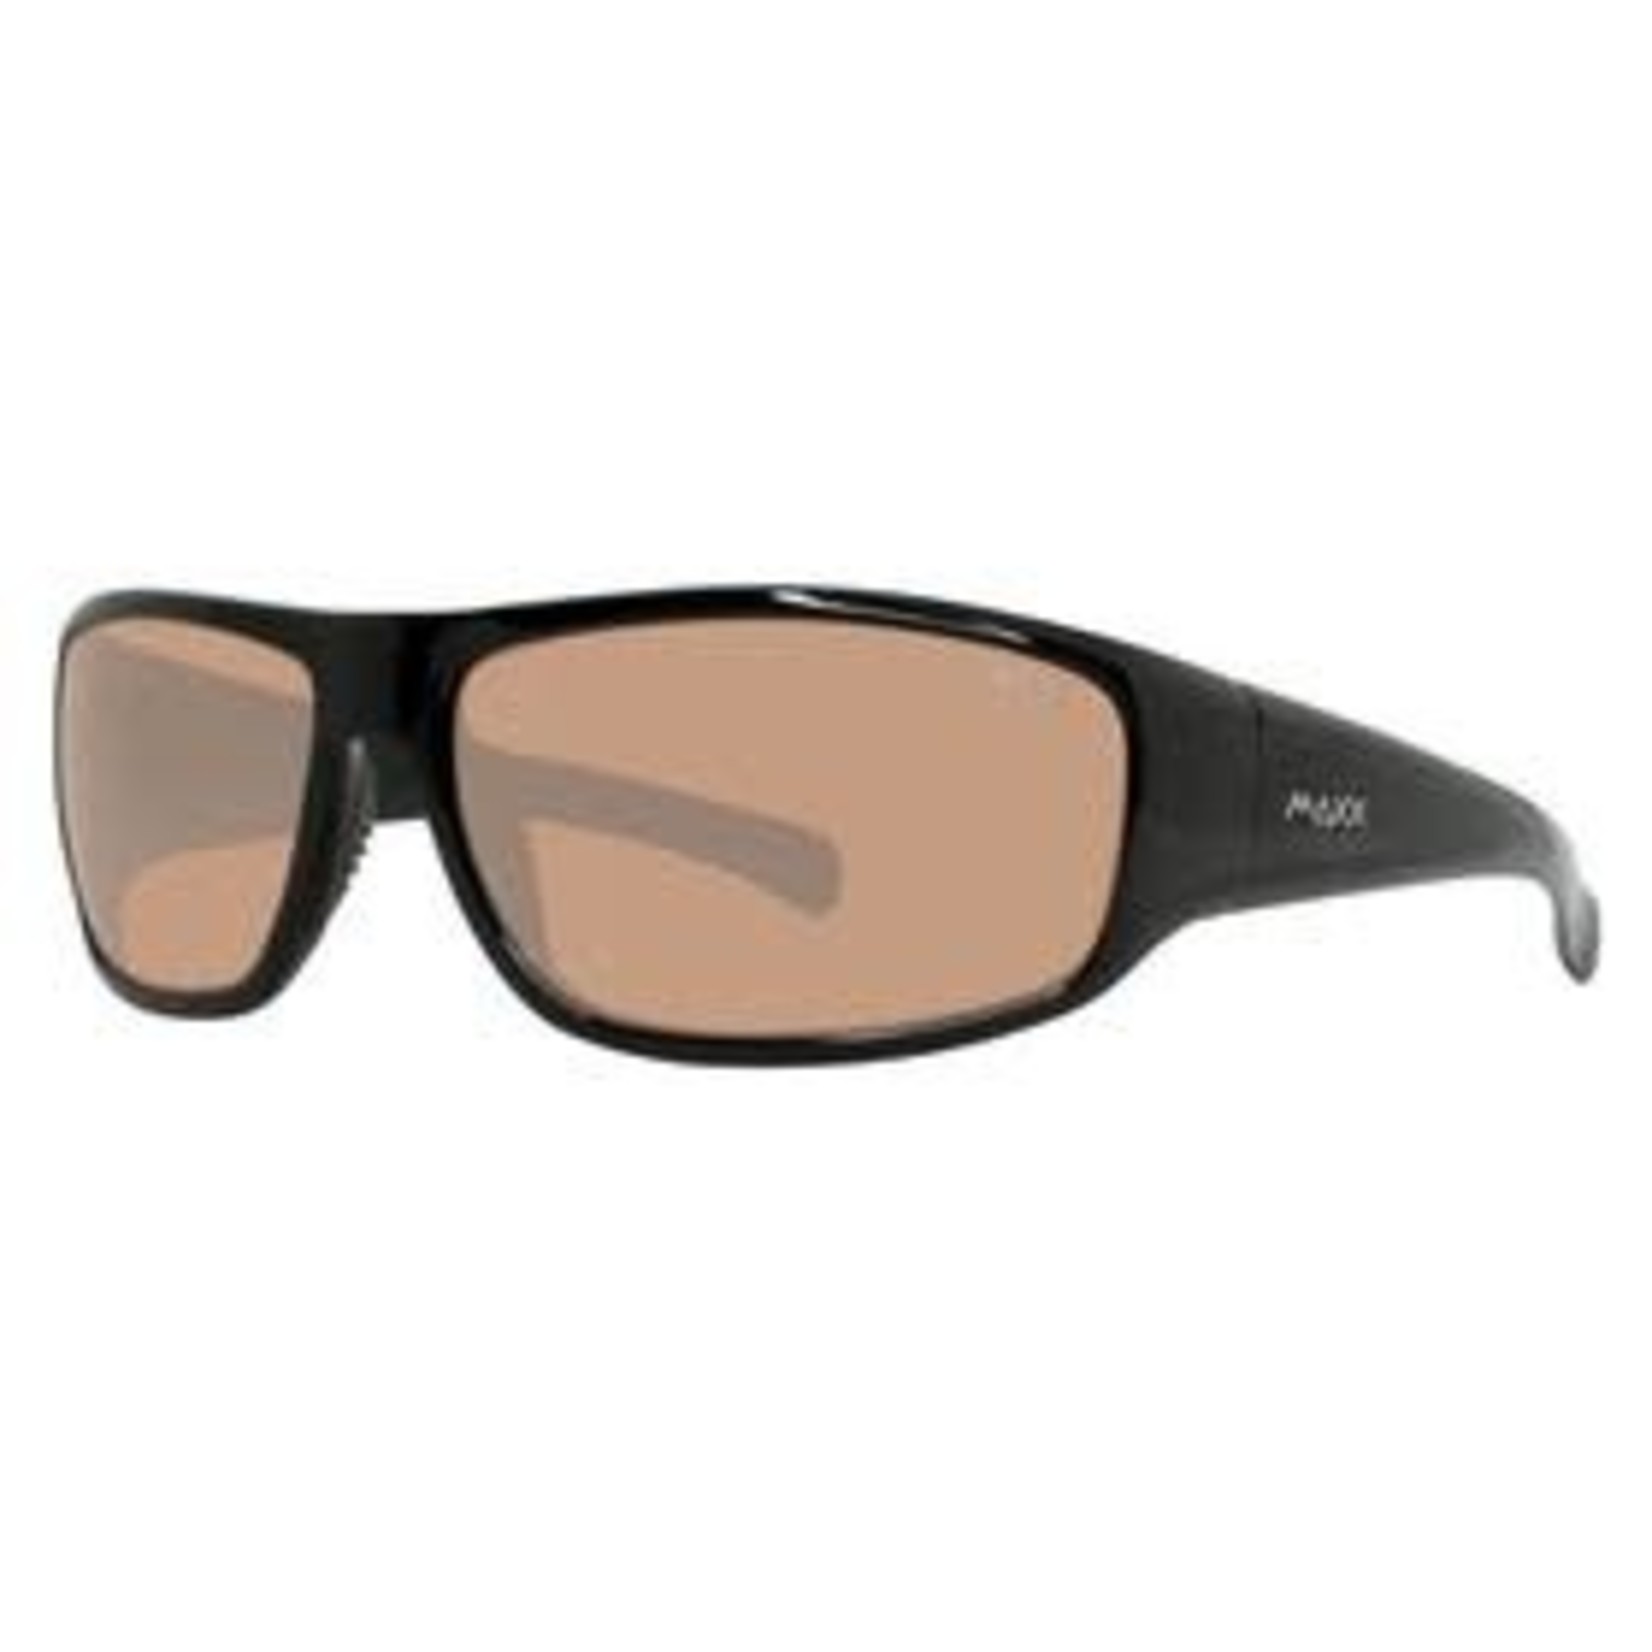 MAXX Sunglasses (Navajo) MAXX Major HD Lens - Black Frame